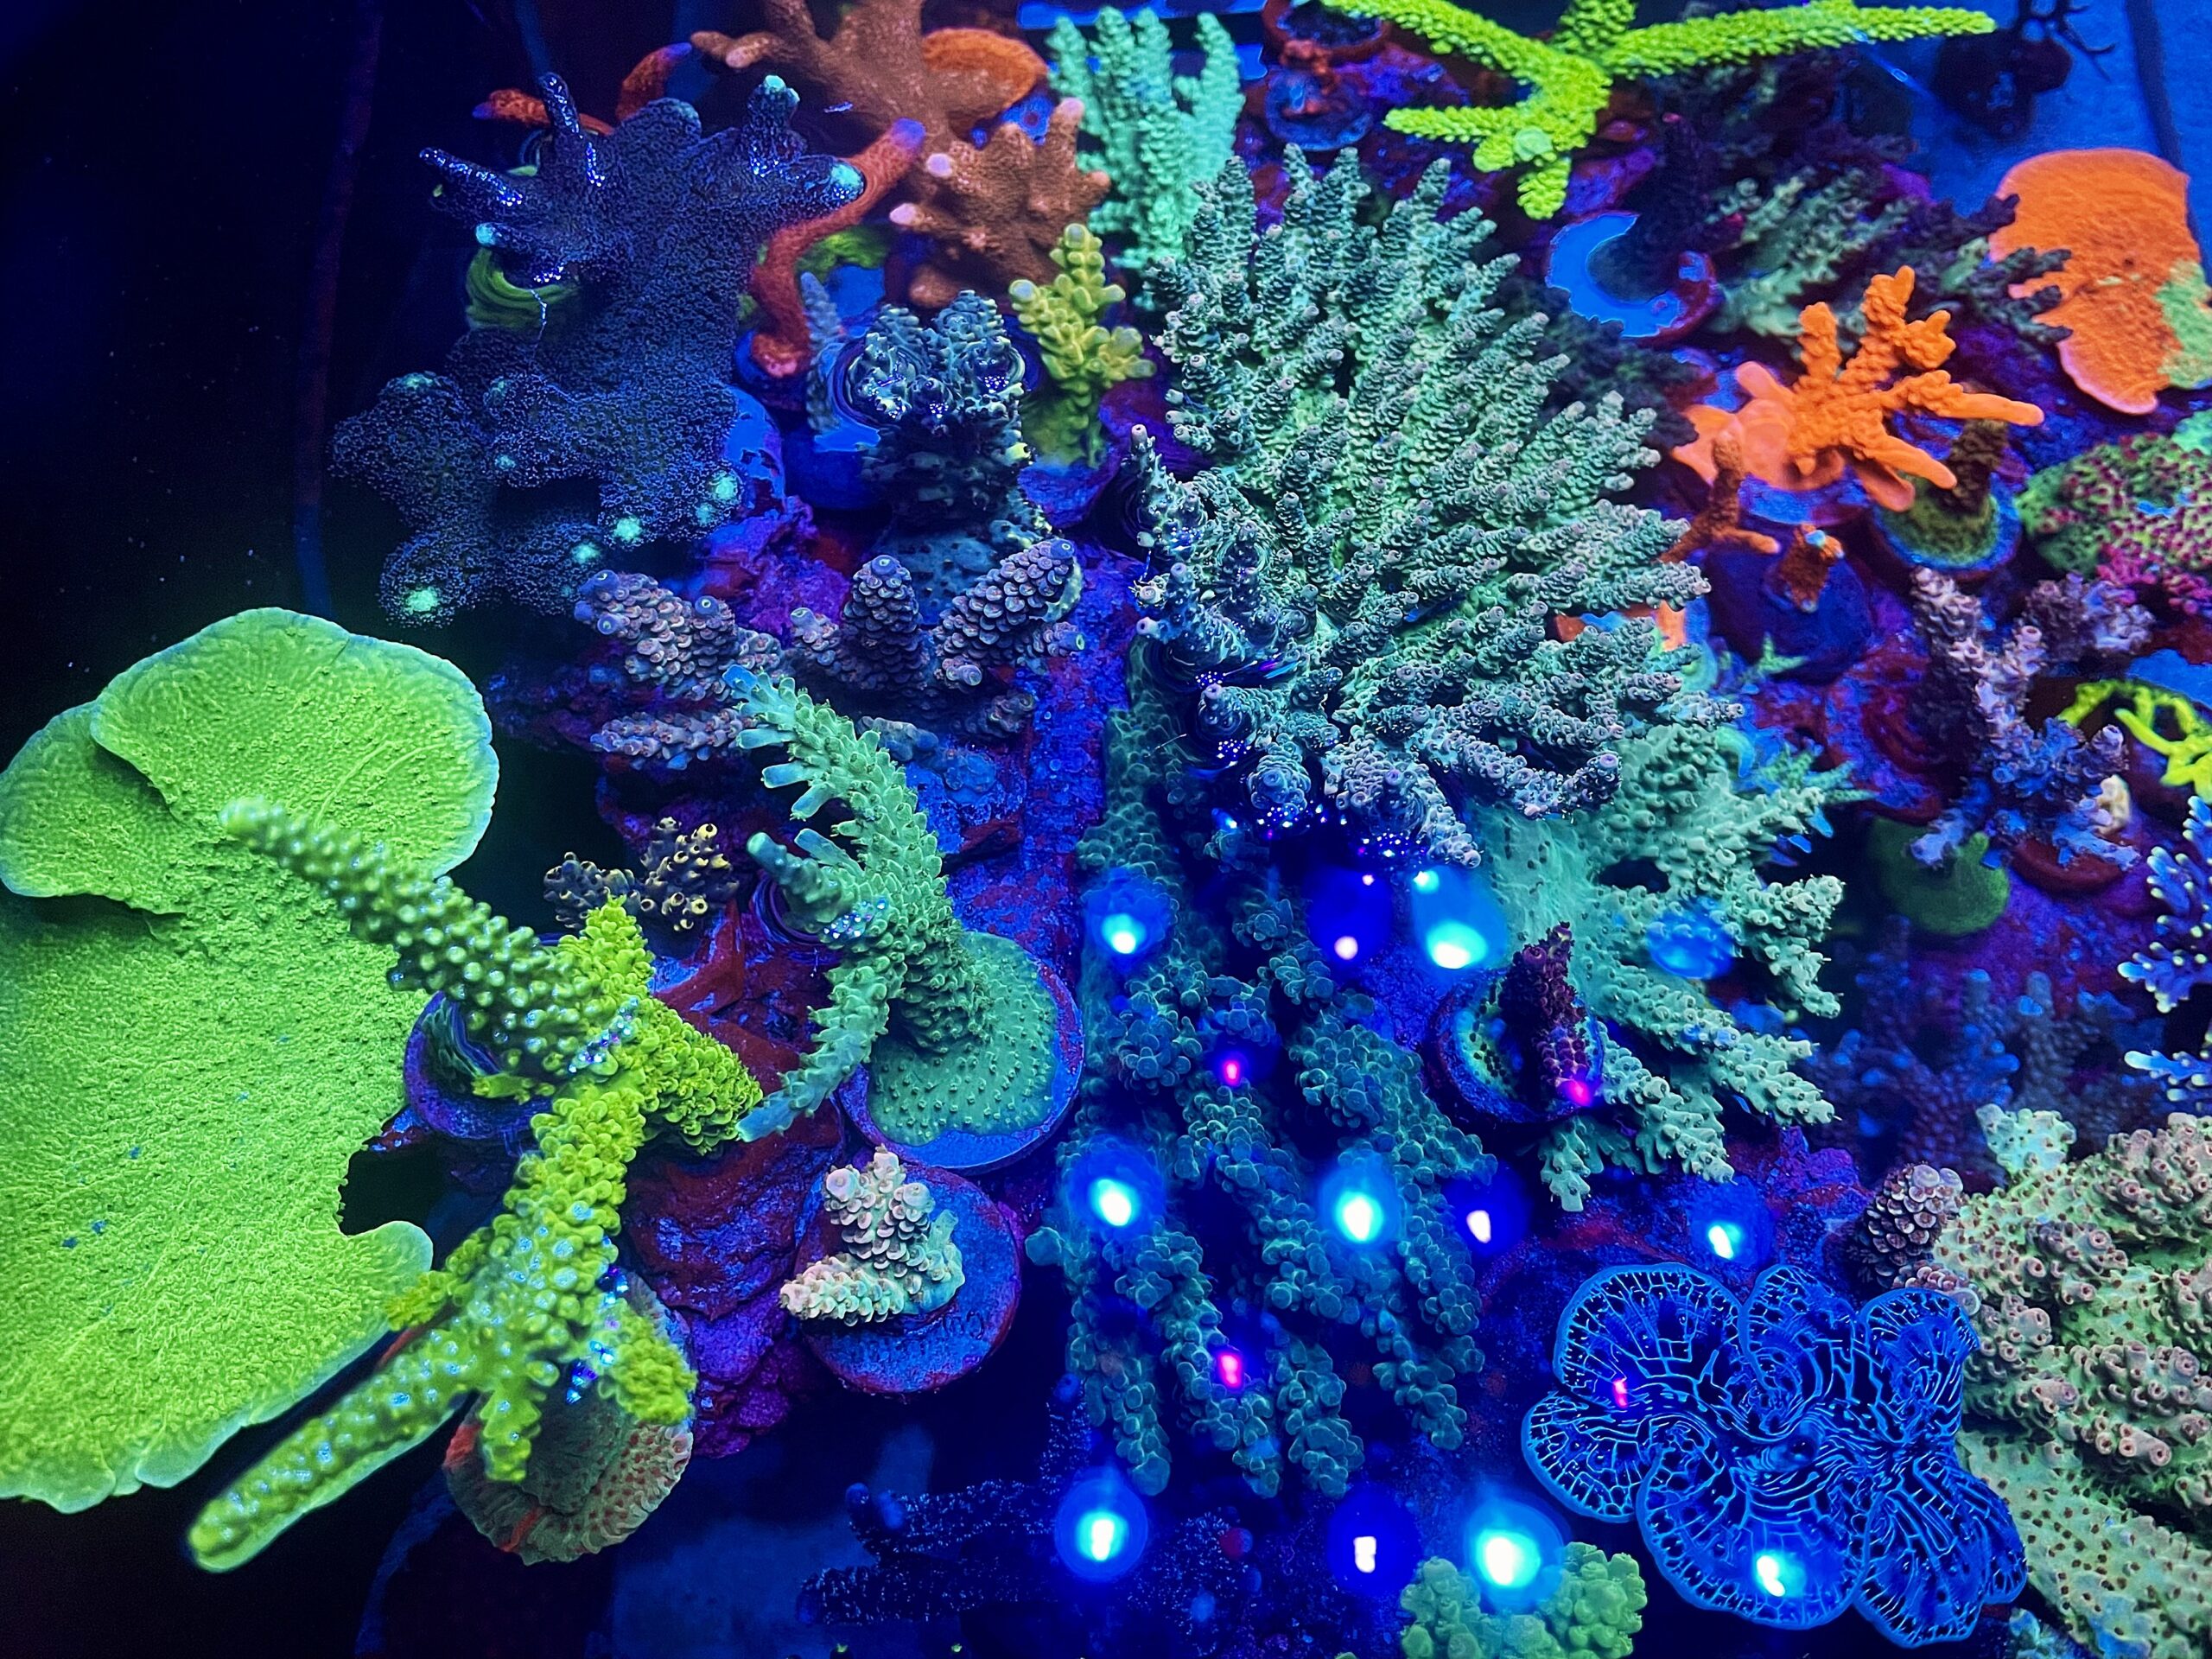 mest-fantastiske-korall-vekst-og-farge